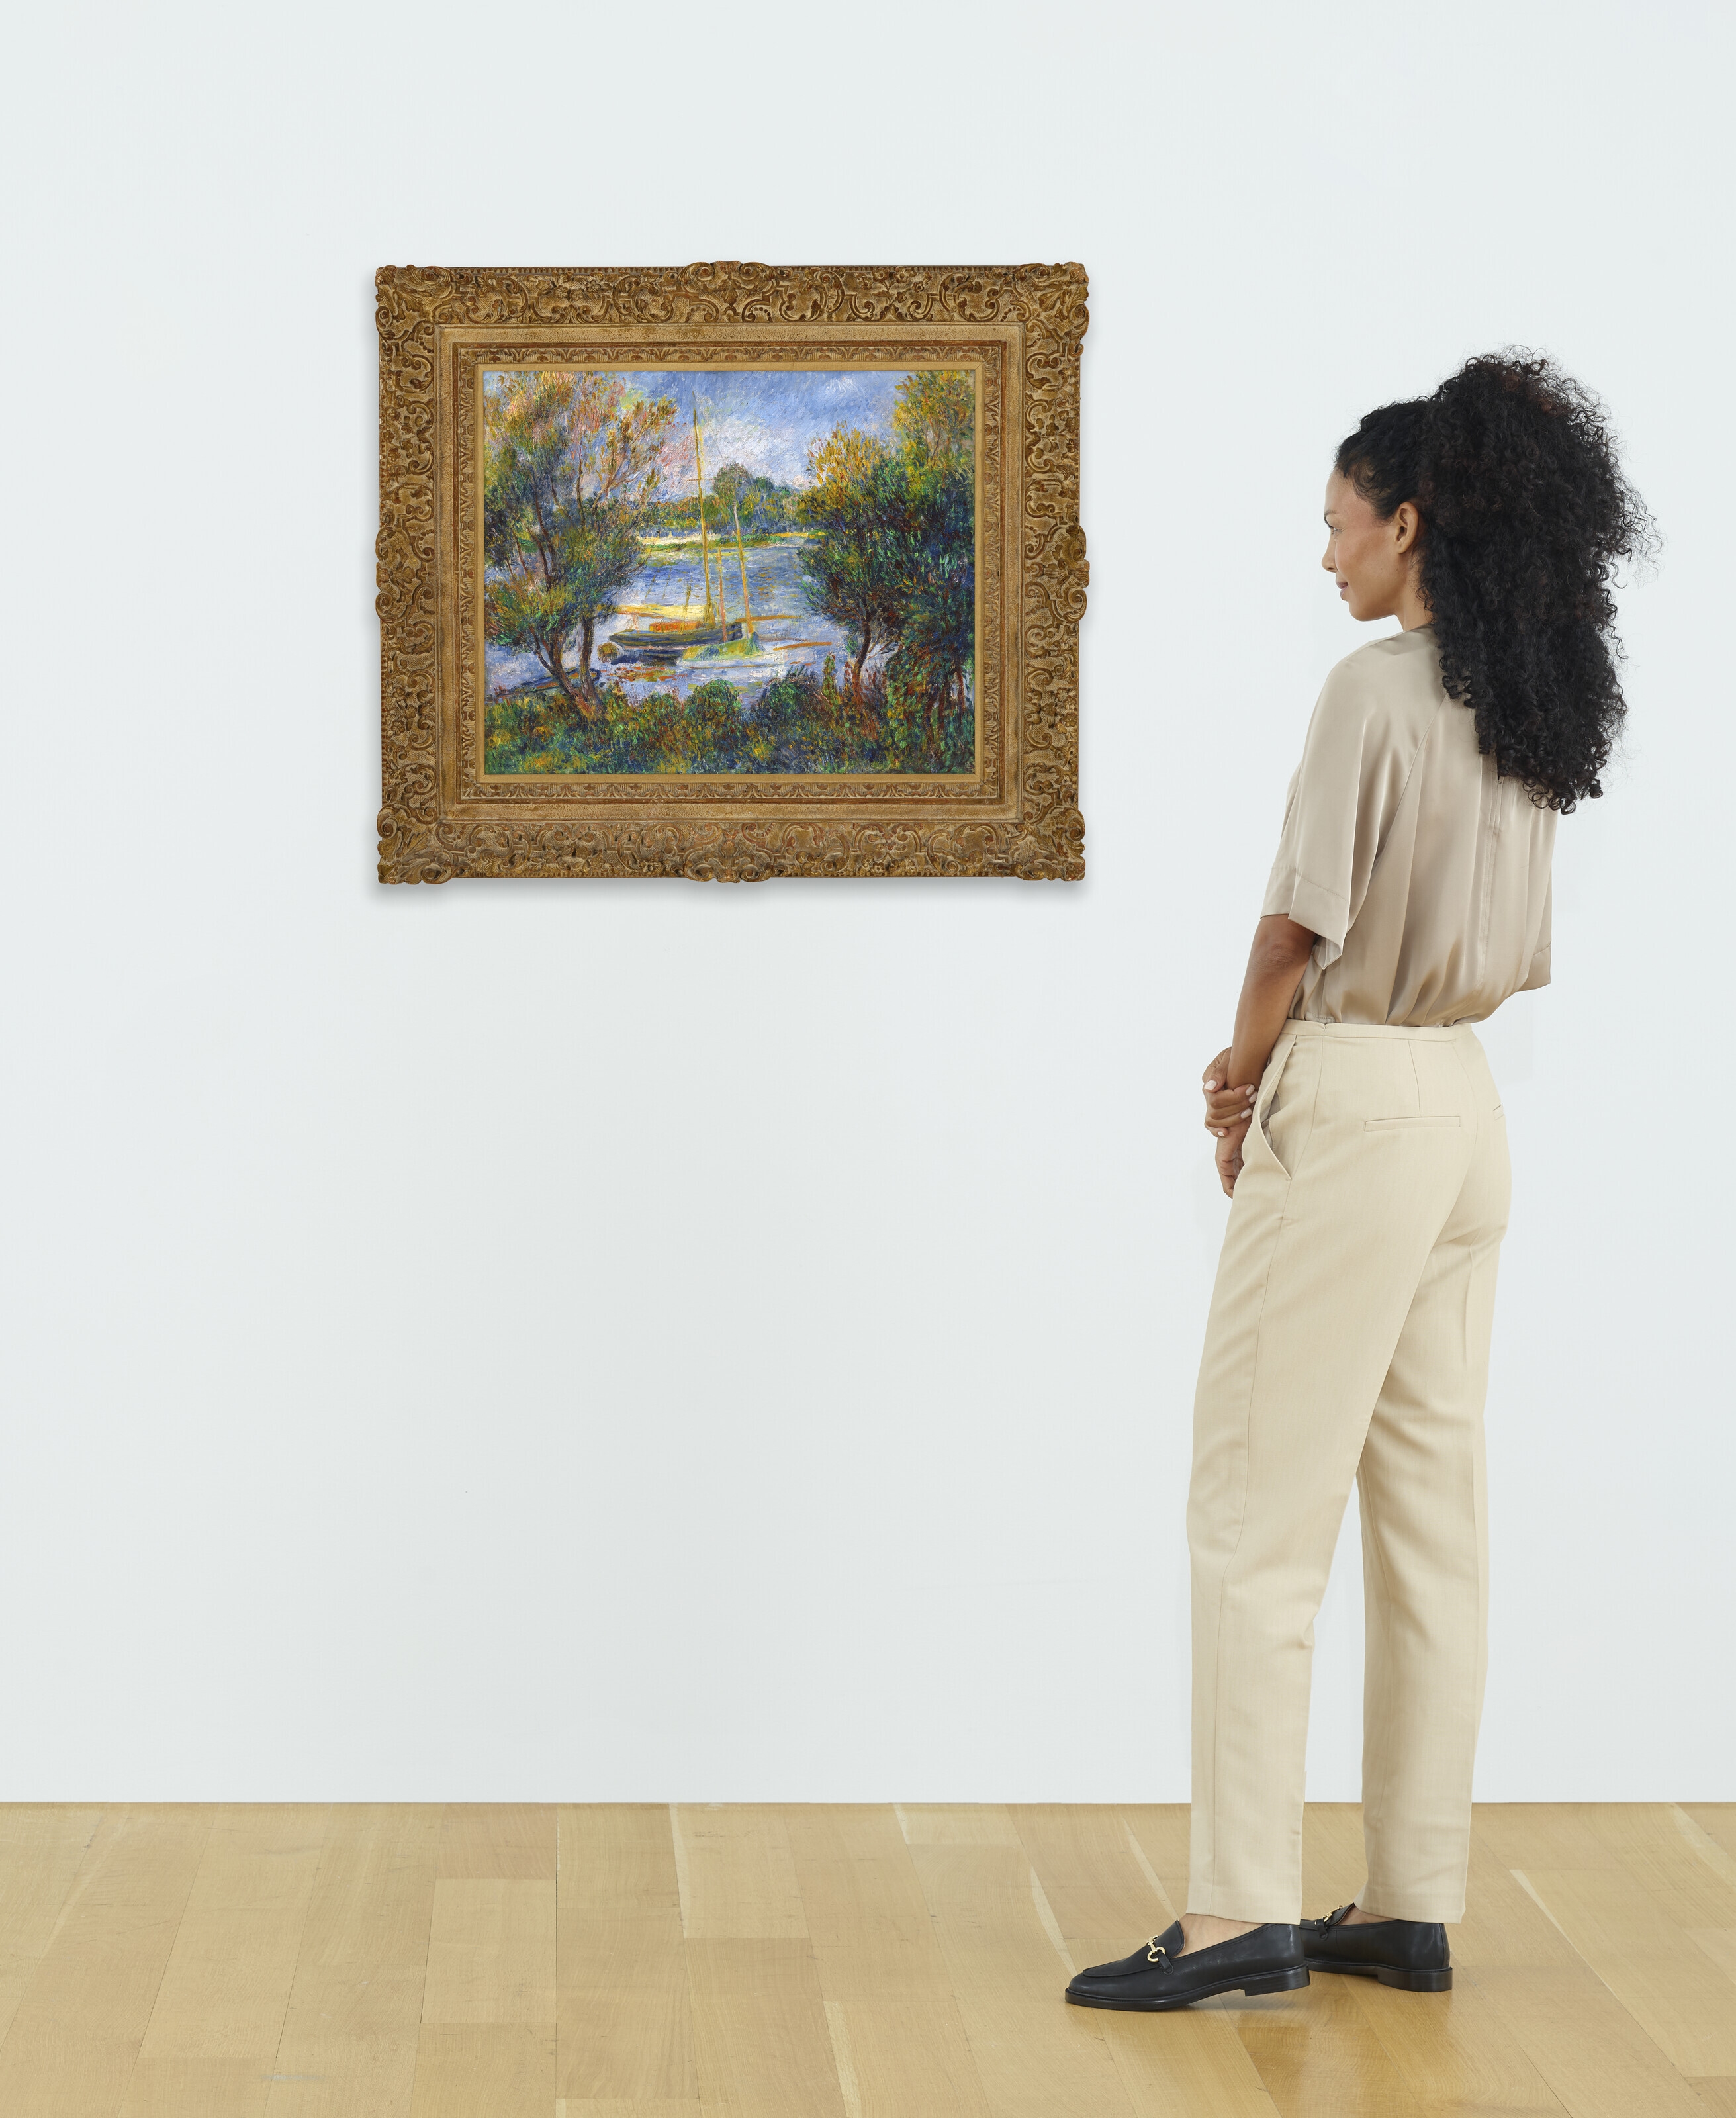 Artwork by Pierre-Auguste Renoir, La Seine à Argenteuil, Made of oil on canvas